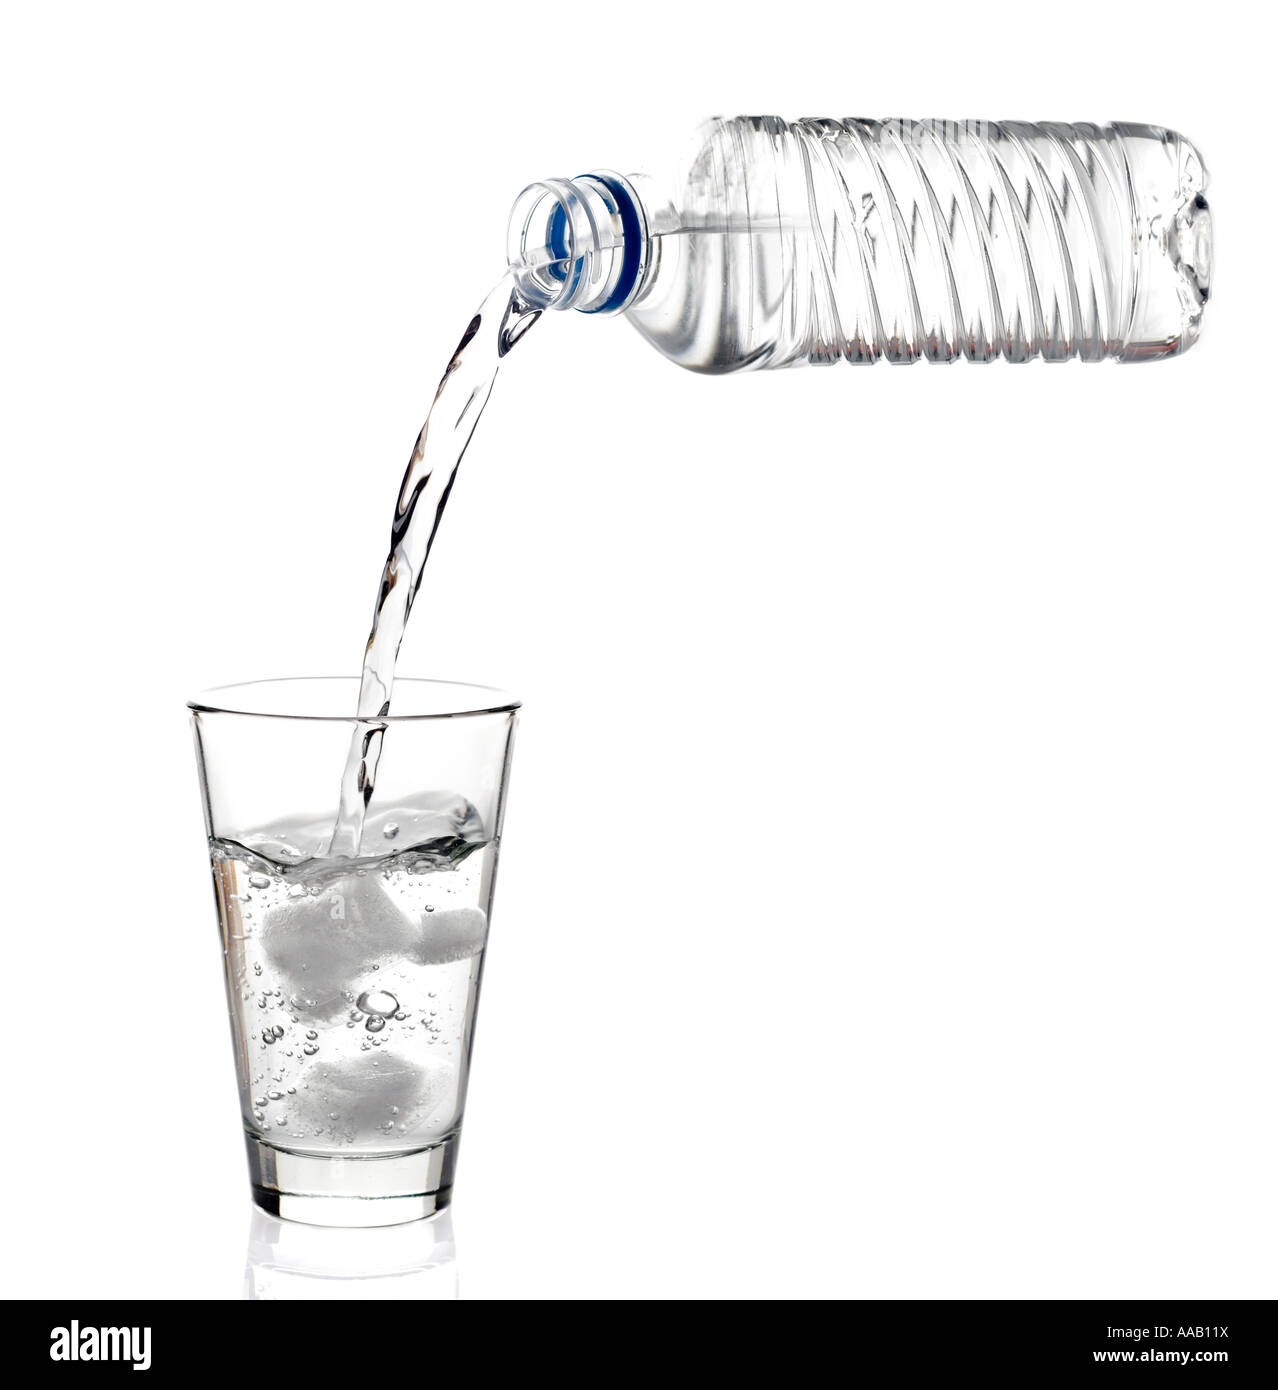 Abgefülltes Wasser in ein Glas gegossen wird Stockfoto